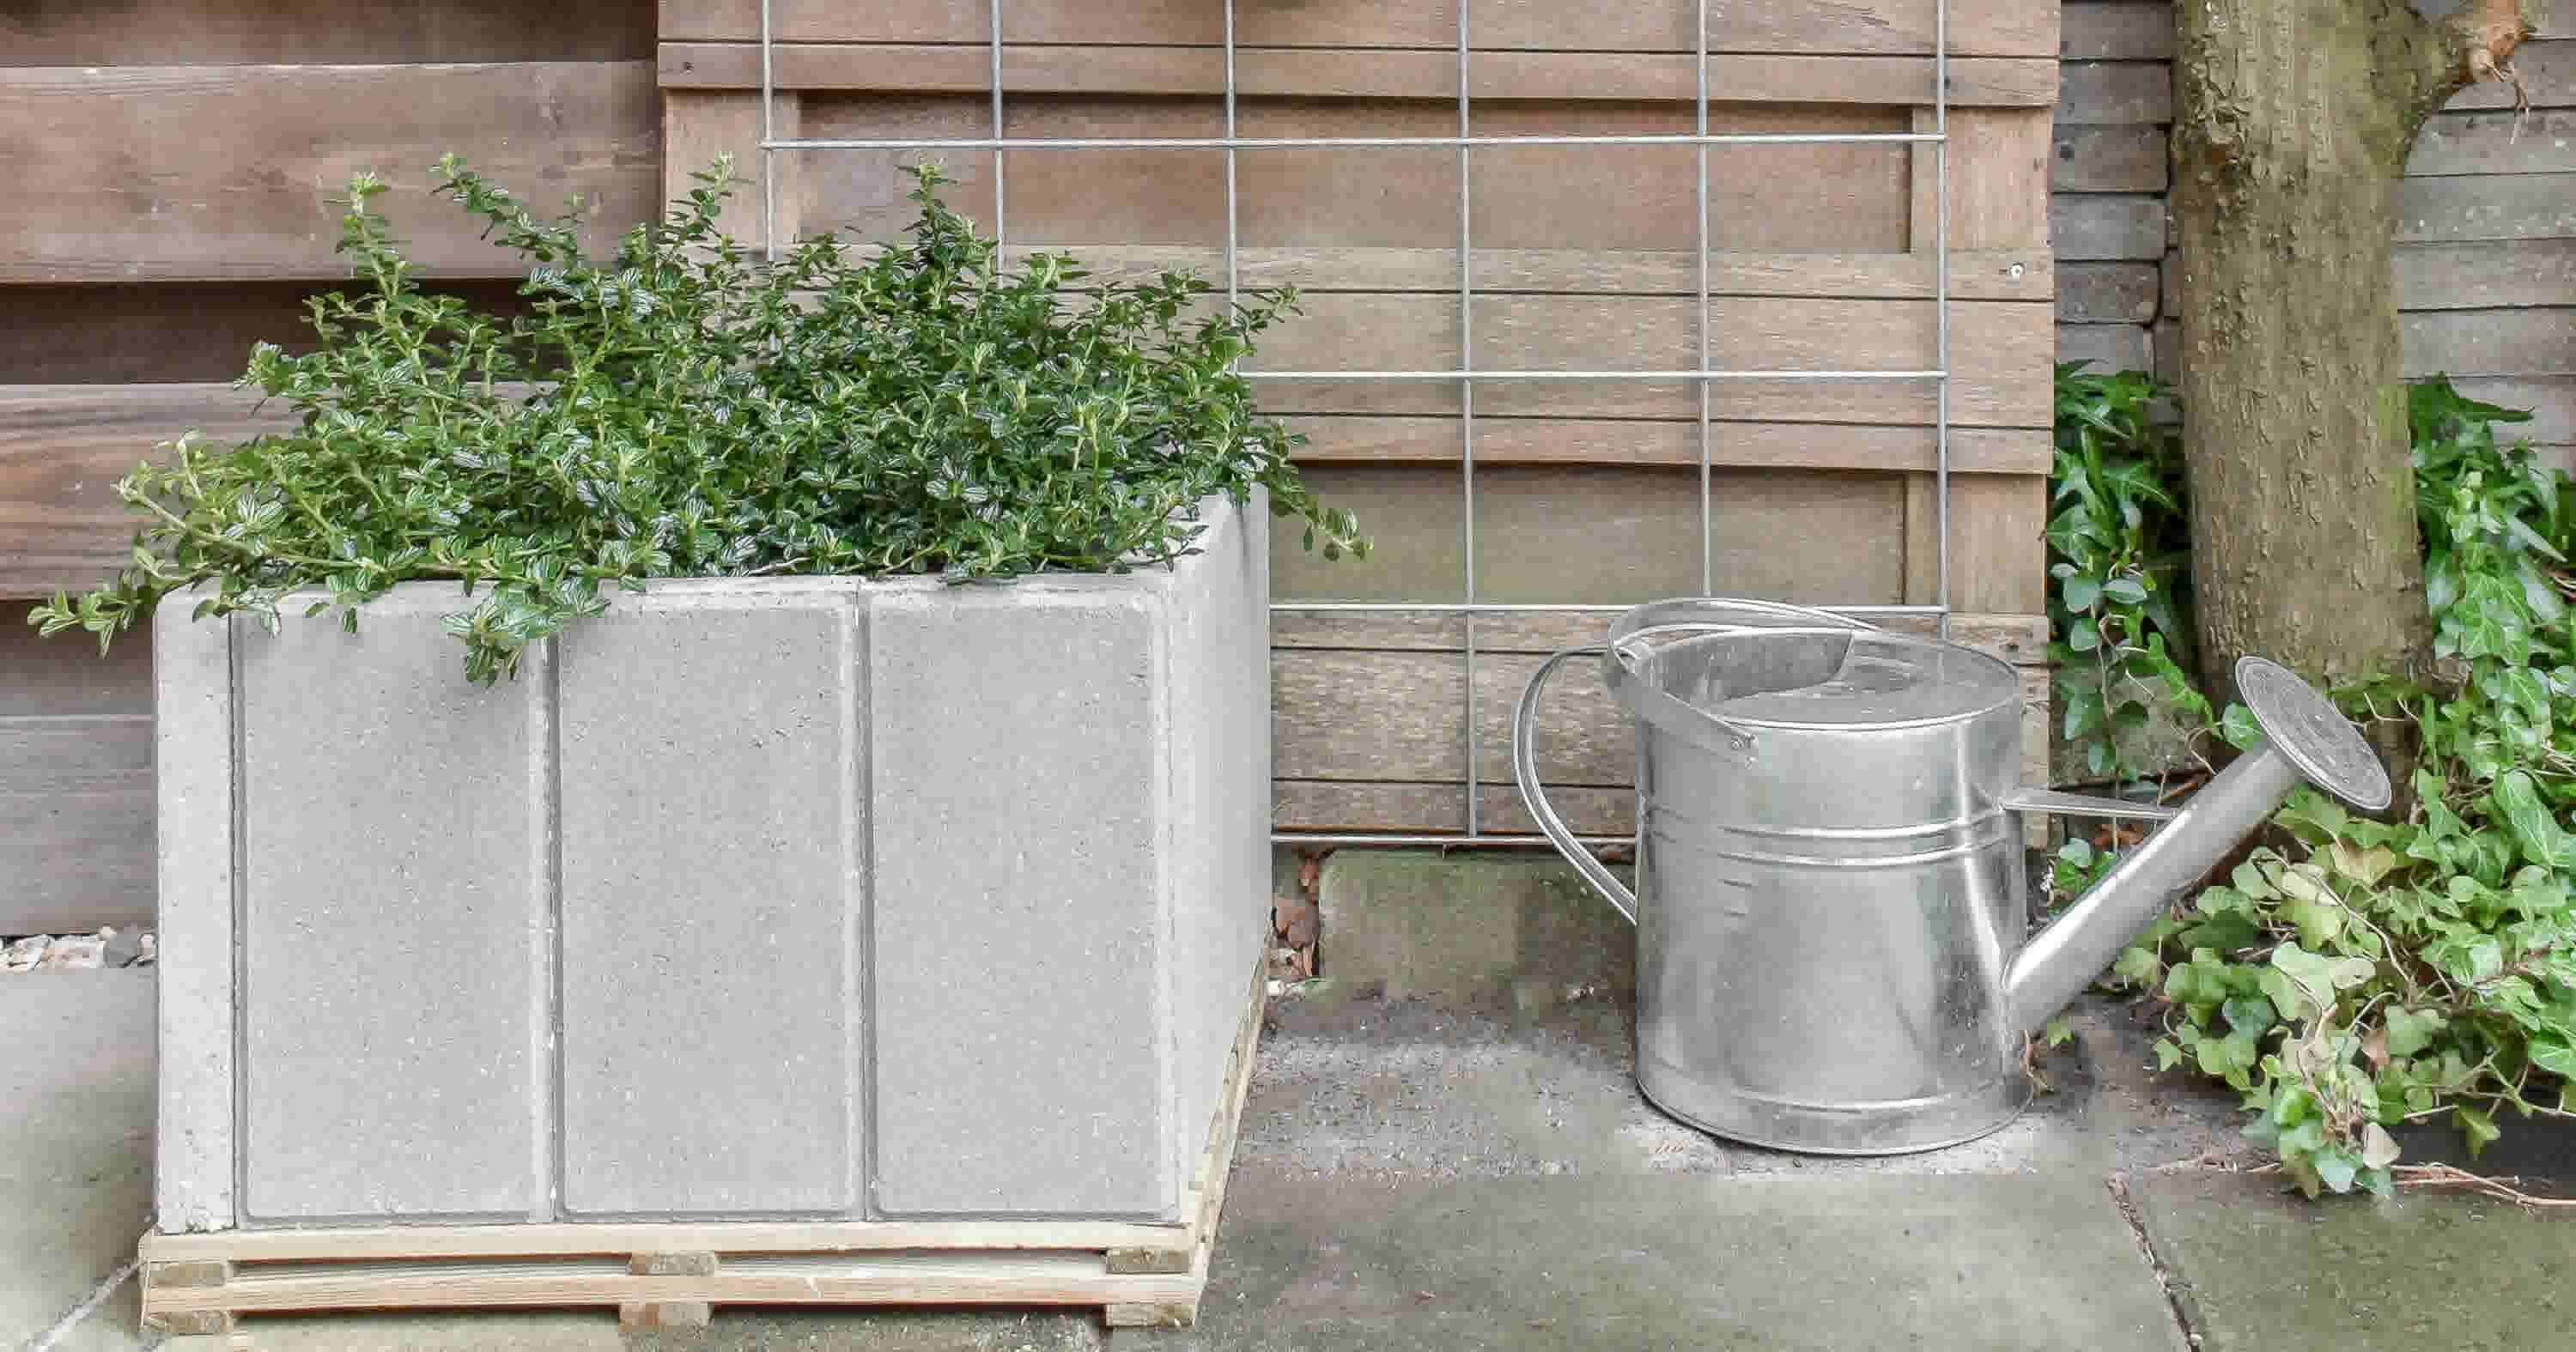 Maak zelf plantenbak van beton - Karwei